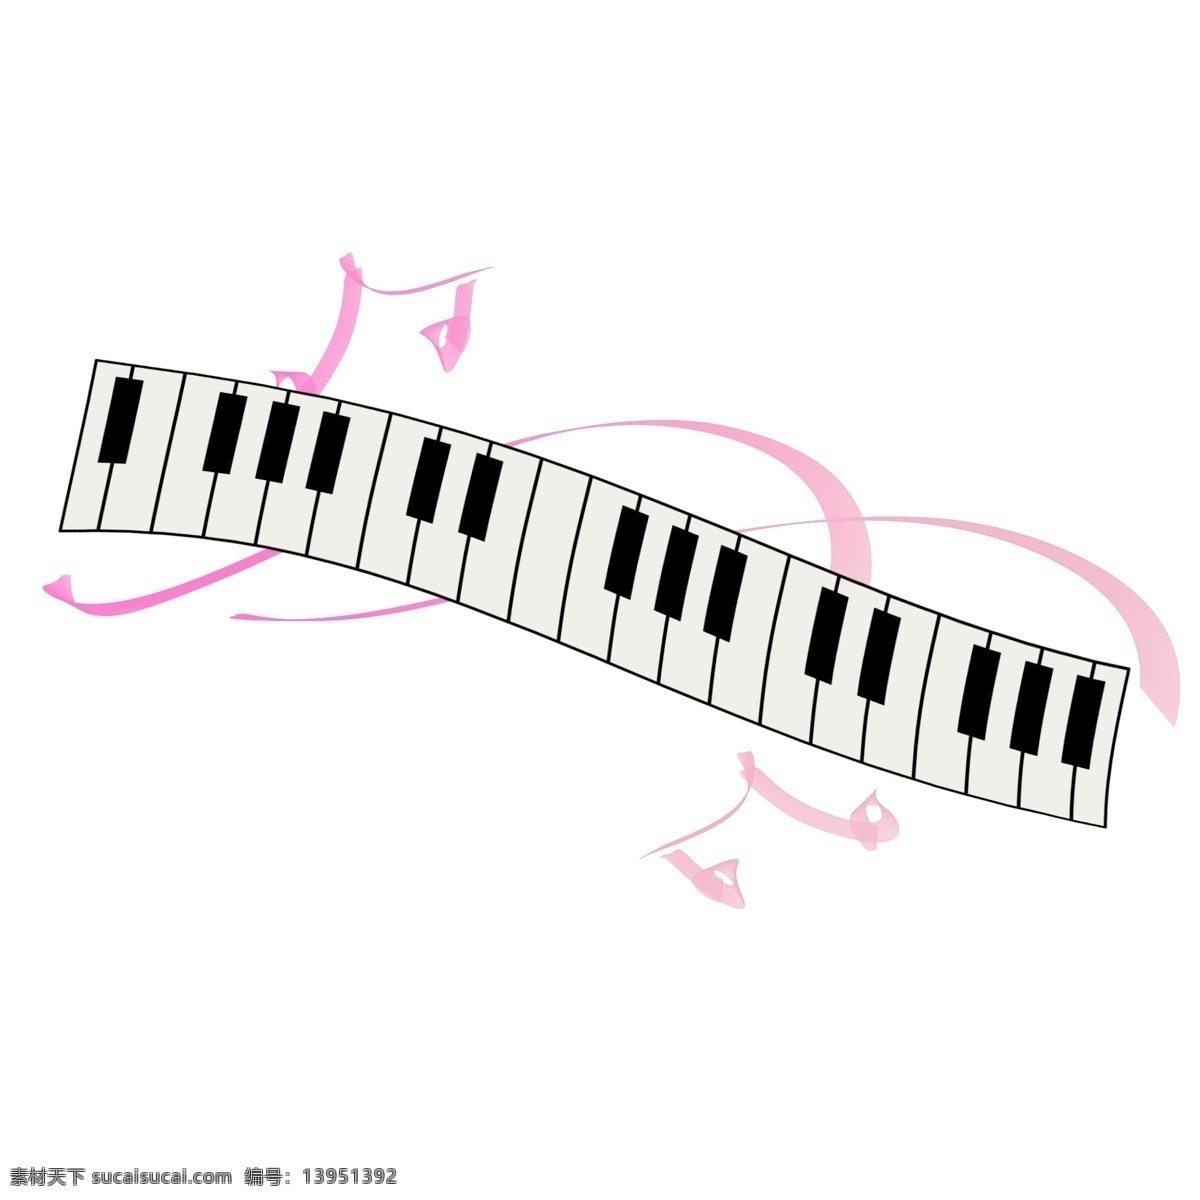 卡通 钢琴 乐器 插画 卡通钢琴 黑白键 音乐符号 音符 乐器插画 钢琴乐器 钢琴插图 弹钢琴